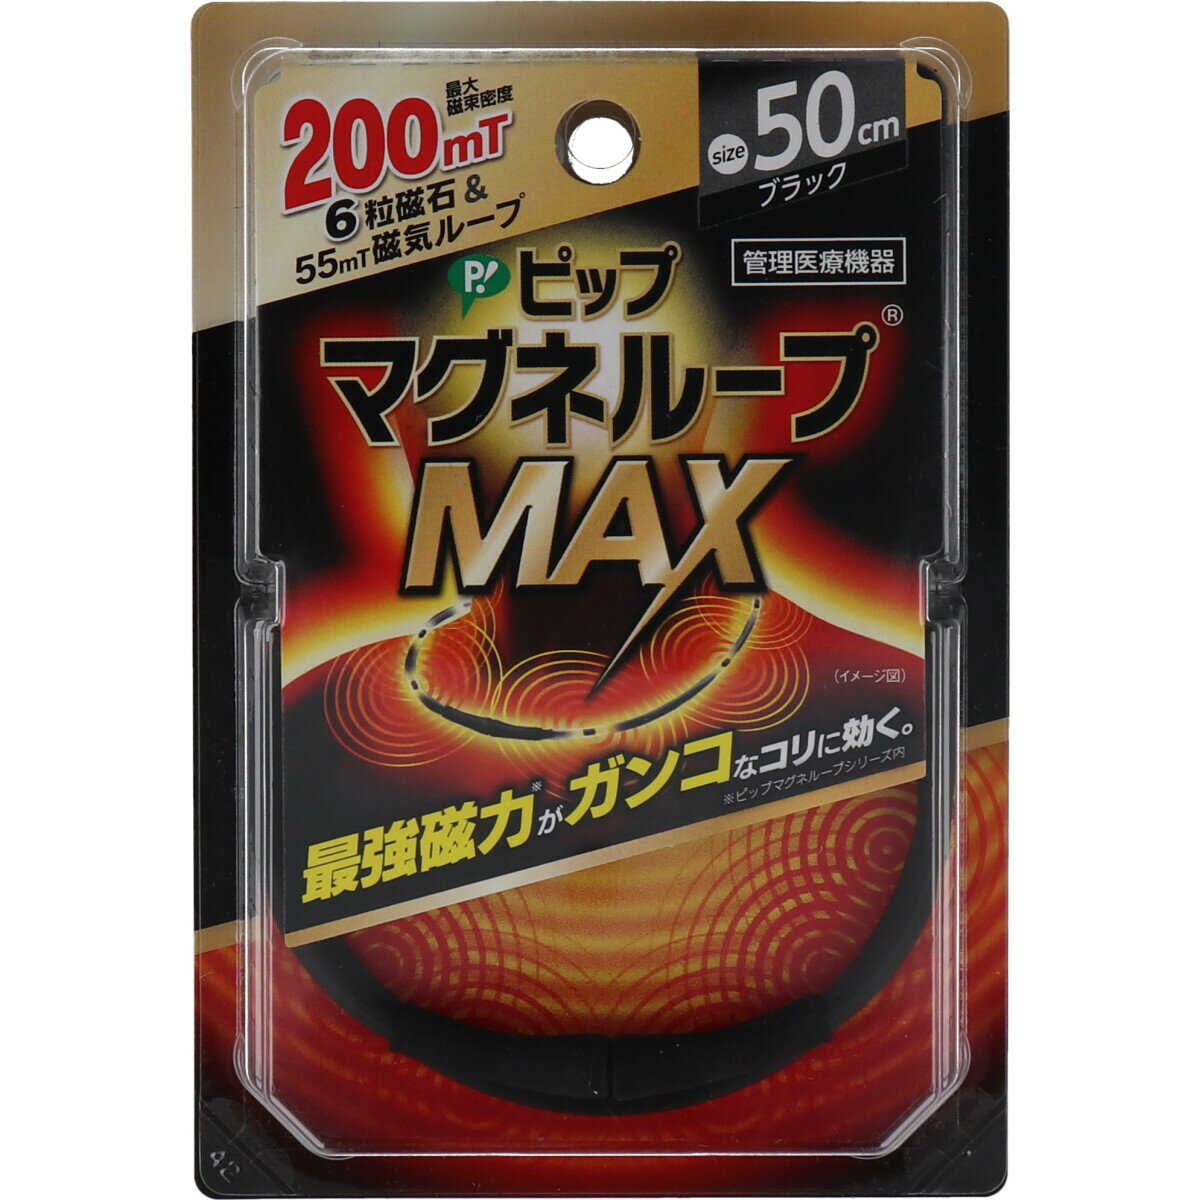 ◆【送料無料】ピップ マグネループMAX ブラック 50cm【買い回り】【スーパーセール】【送料無料】